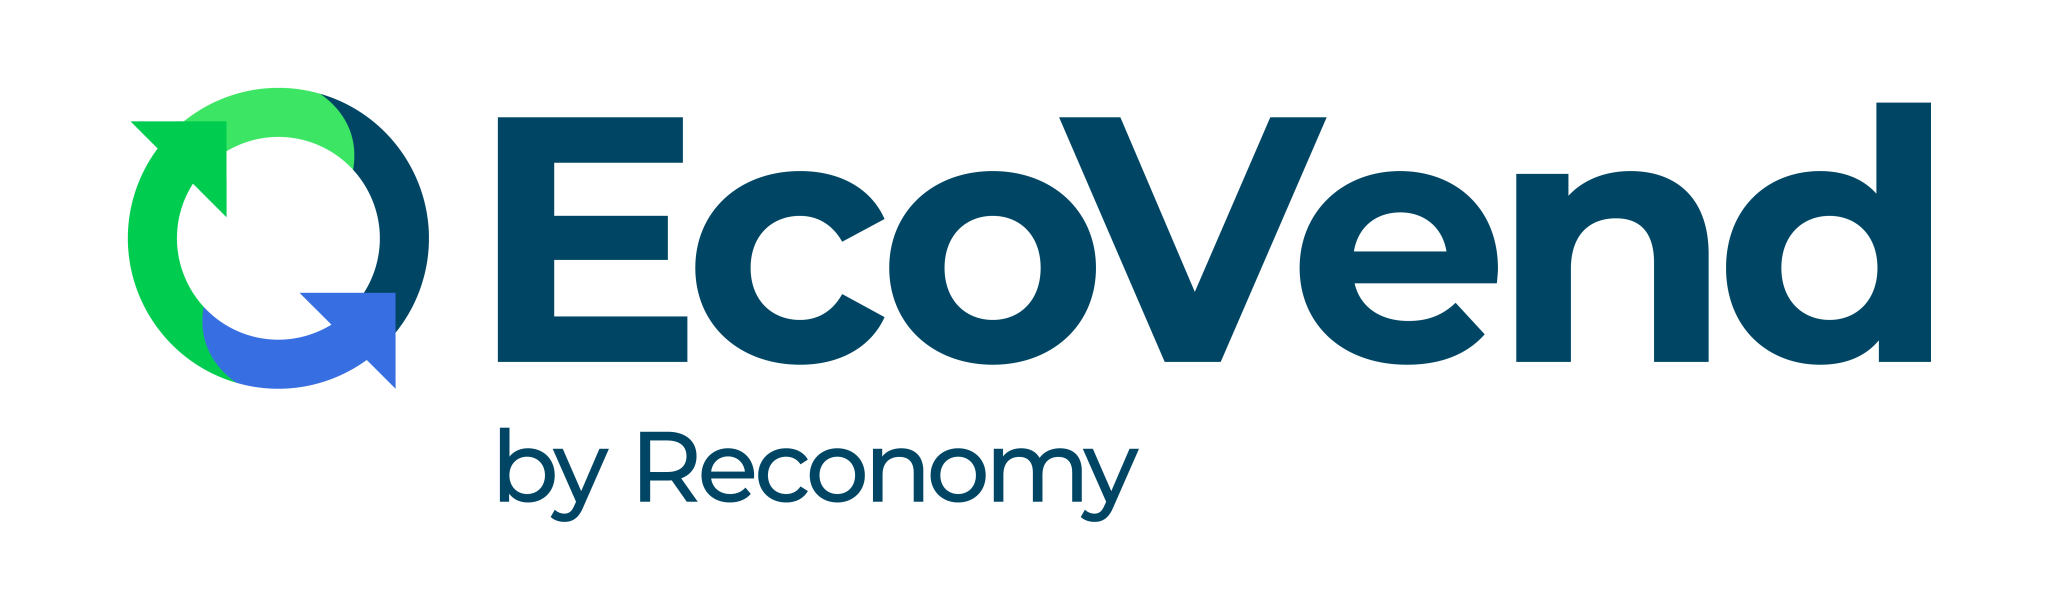 REC00233_Reconomy Logo Template_EcoVend